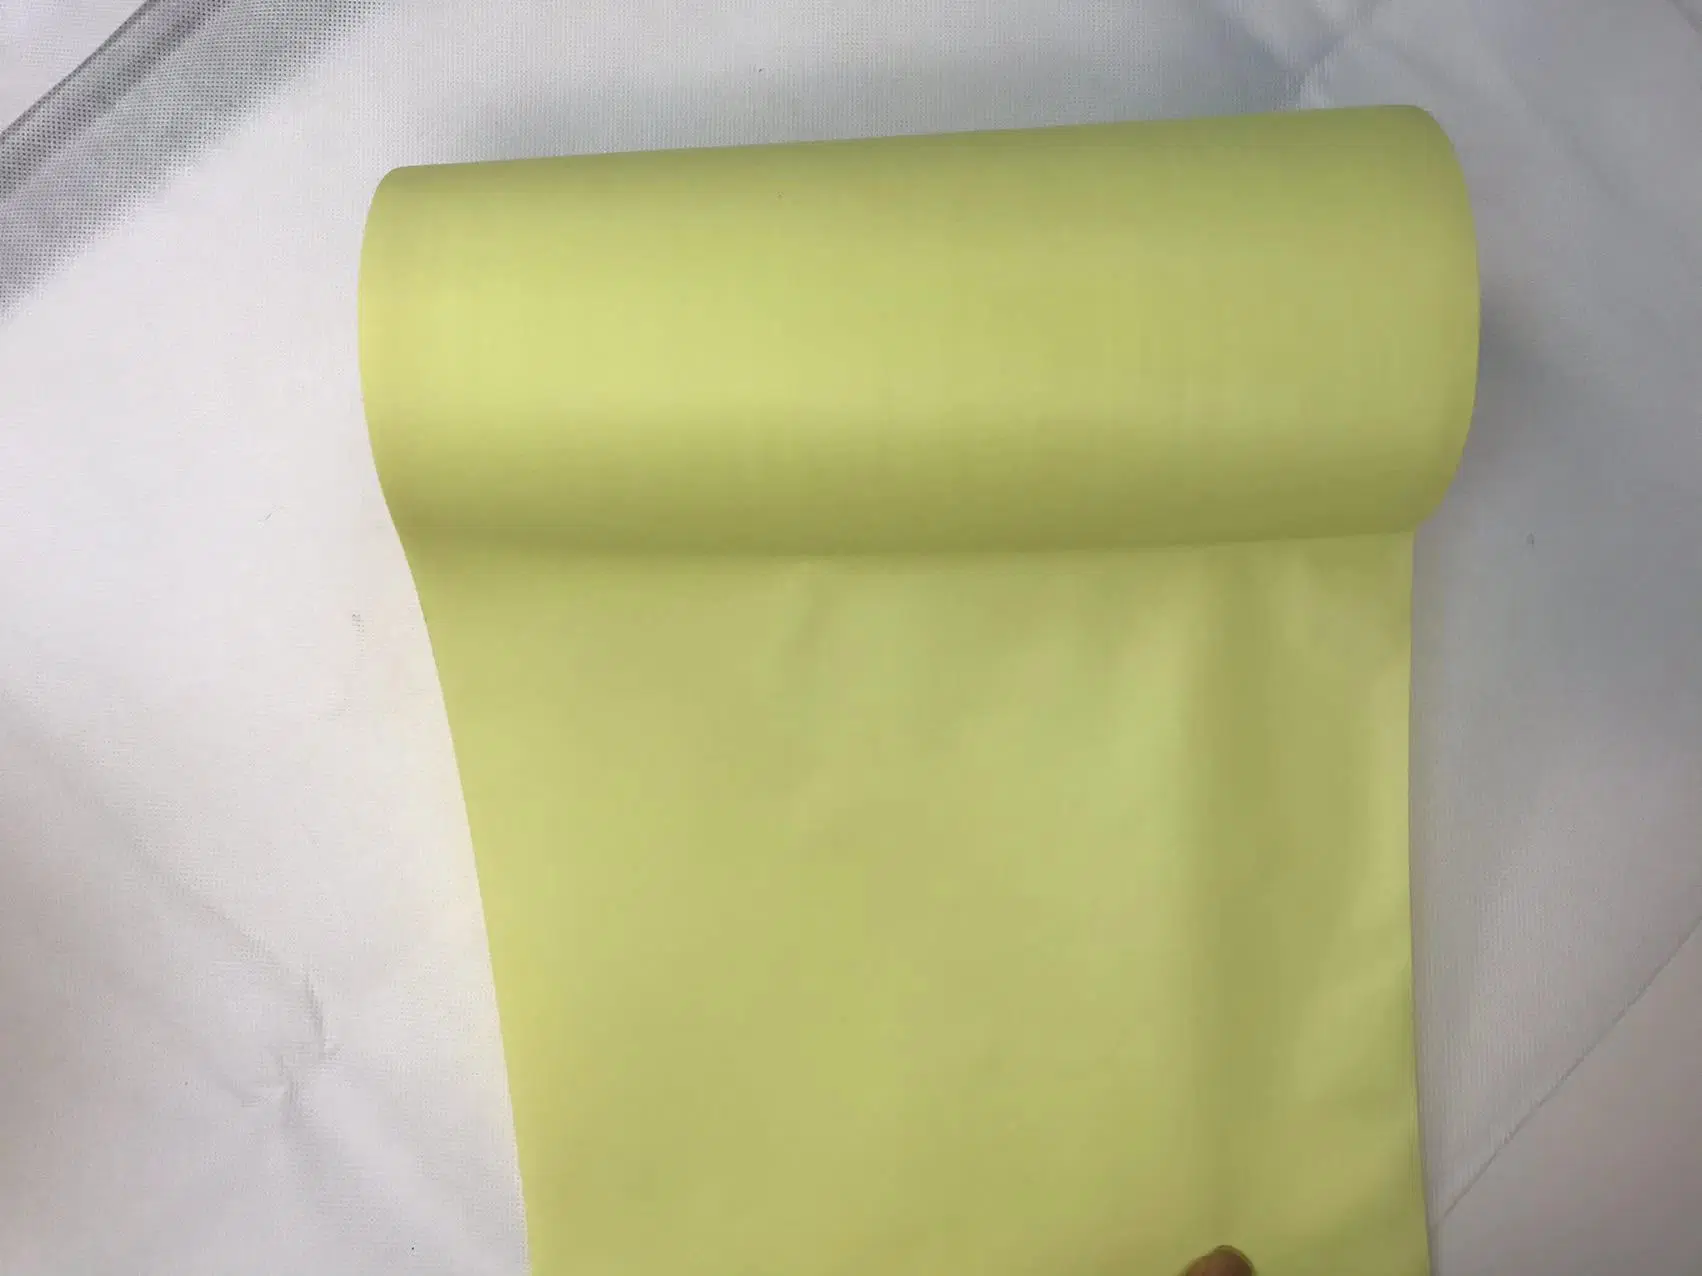 Diaper Backsheet PE Film Raw Material for Sanitary Pad